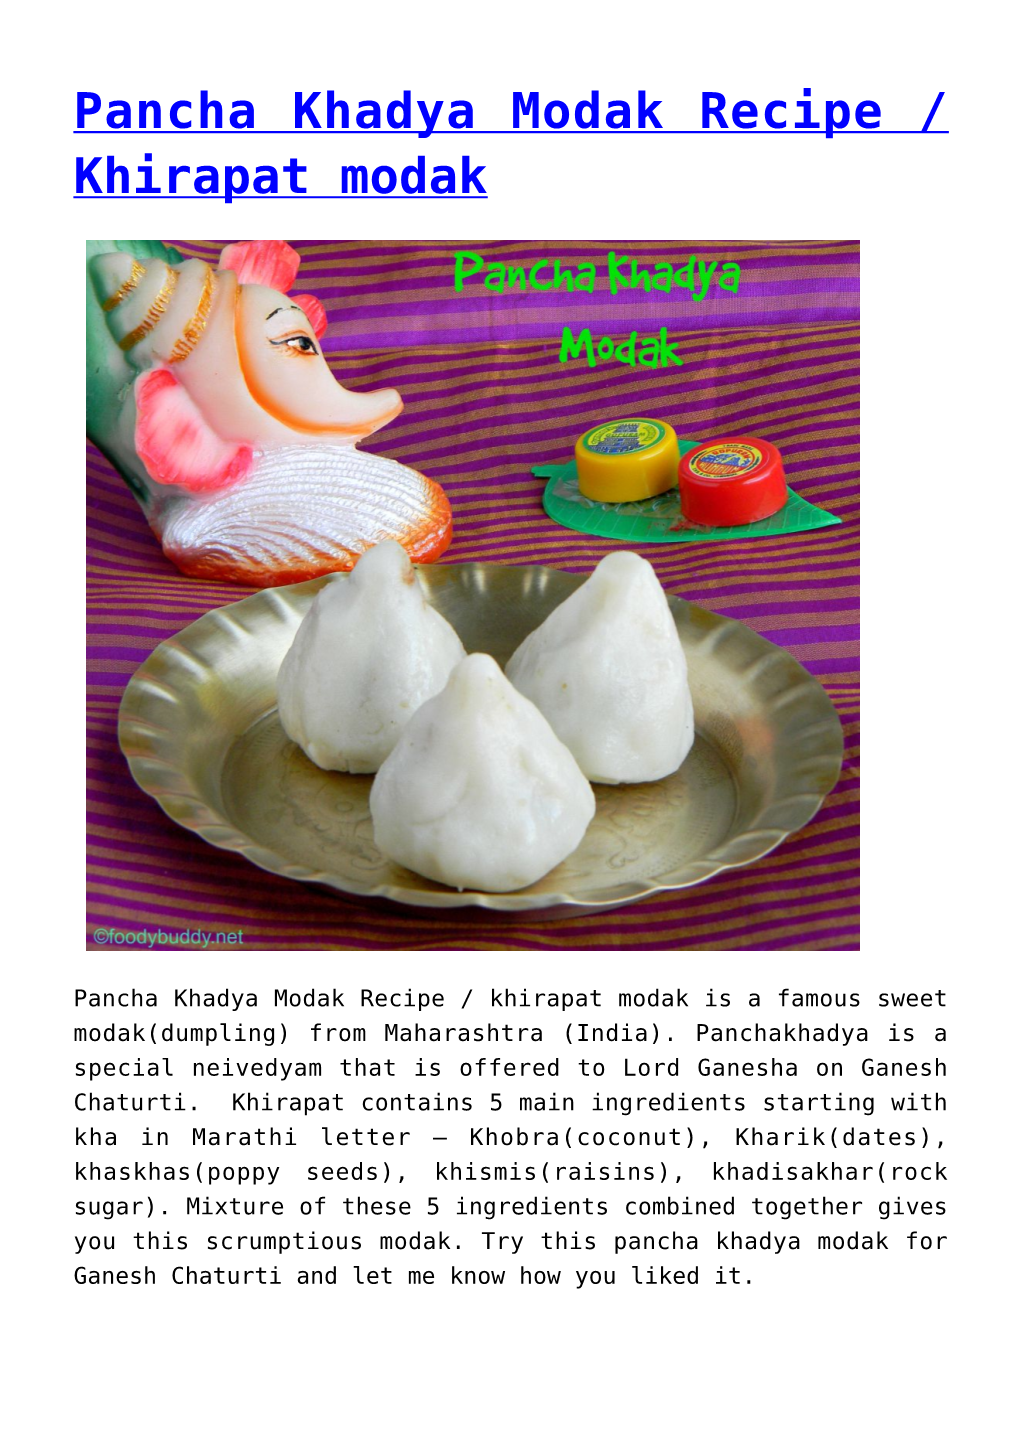 Pancha Khadya Modak Recipe / Khirapat Modak